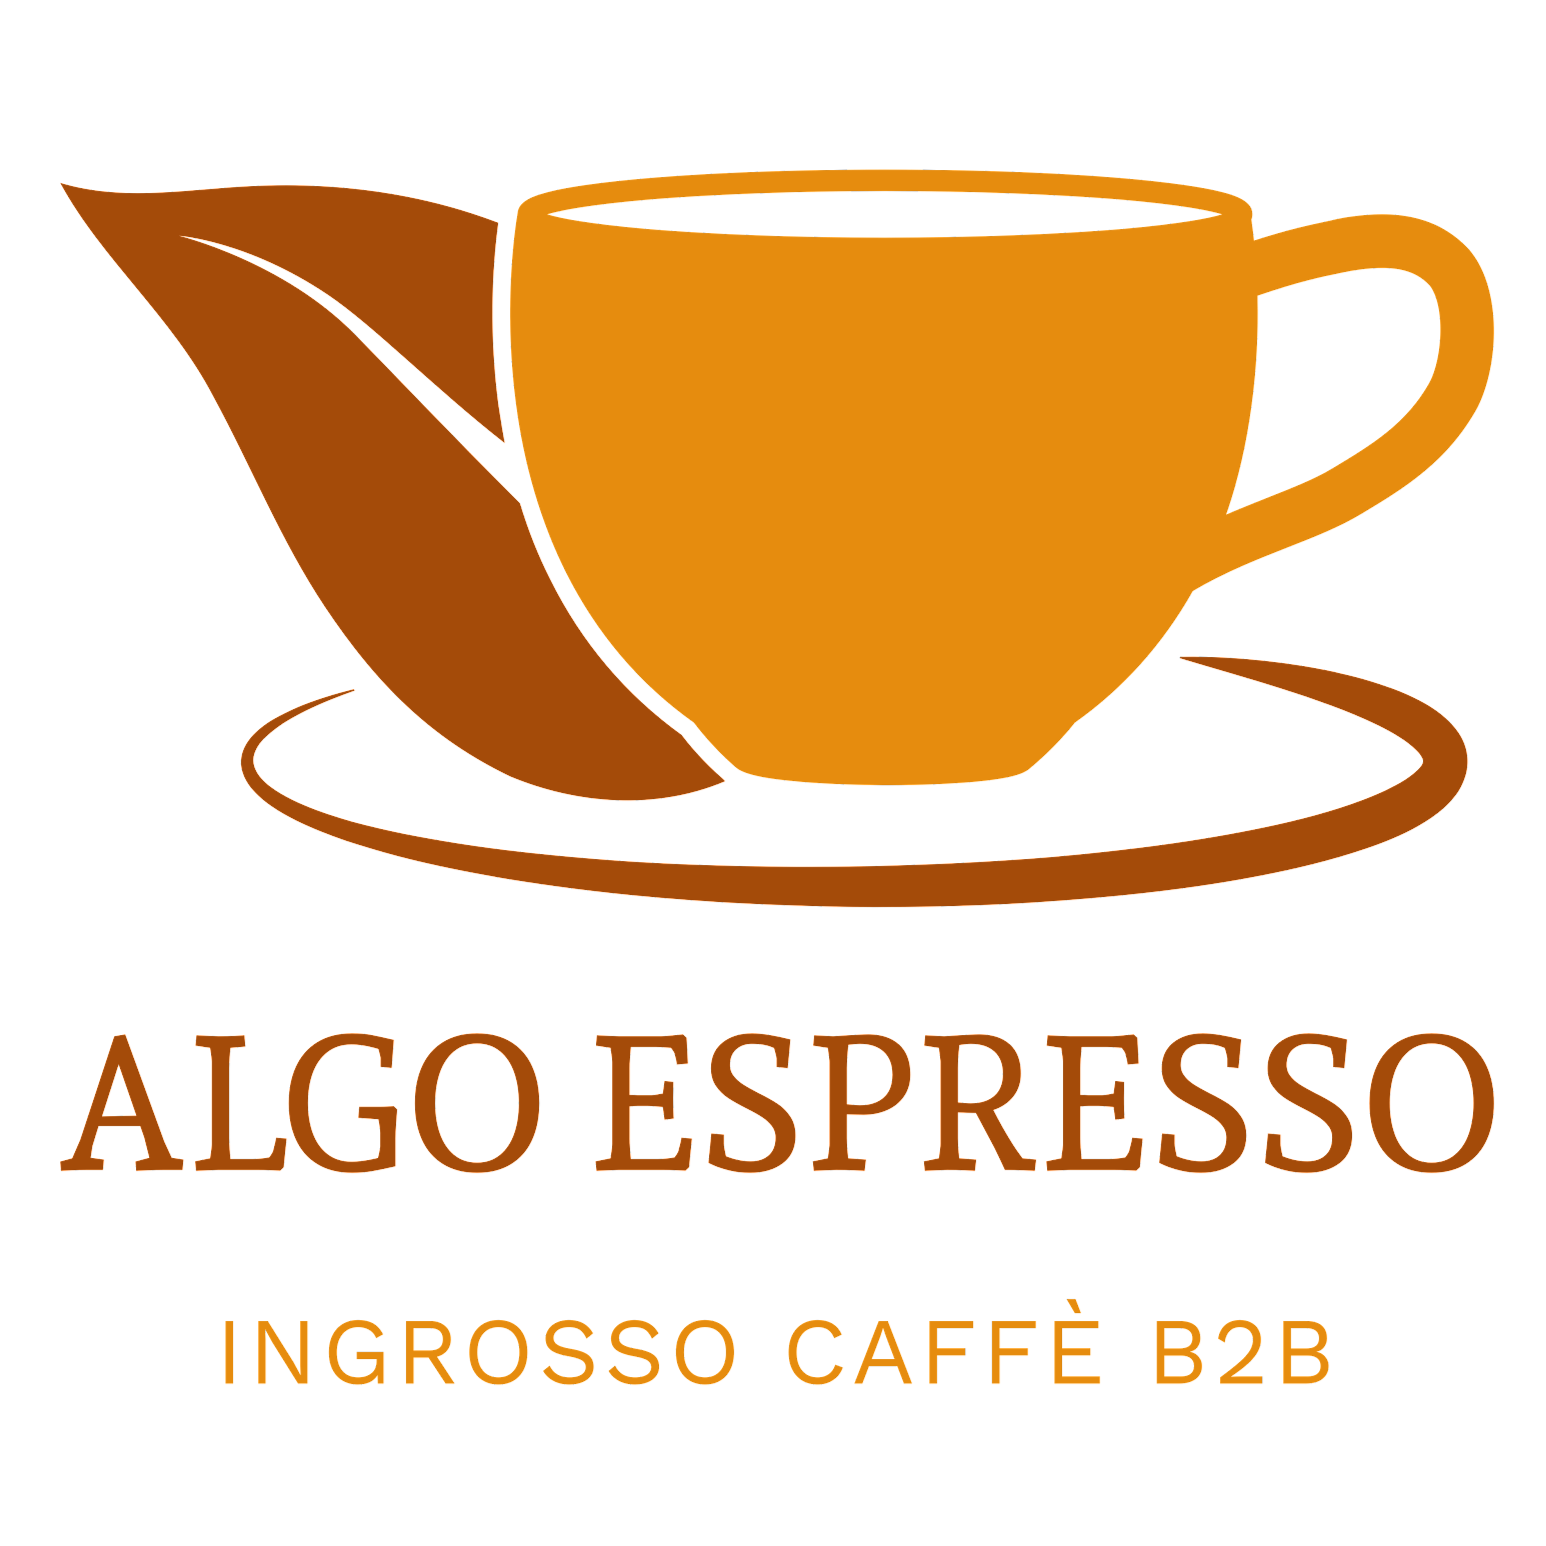 Algo Espresso Logo - Original with Transparent Background - 5000x5000